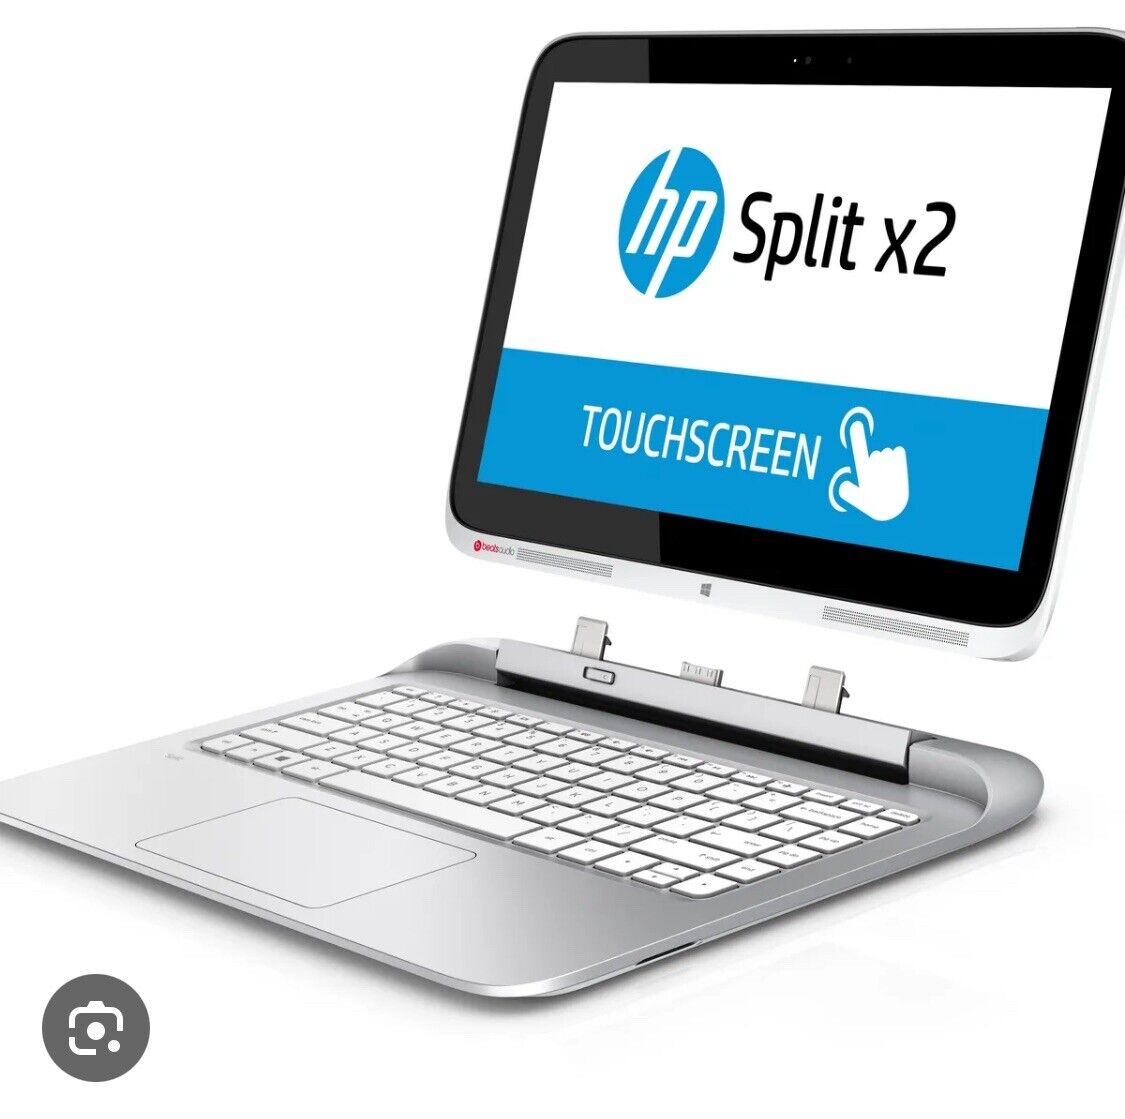 HP Split x2 Laptop